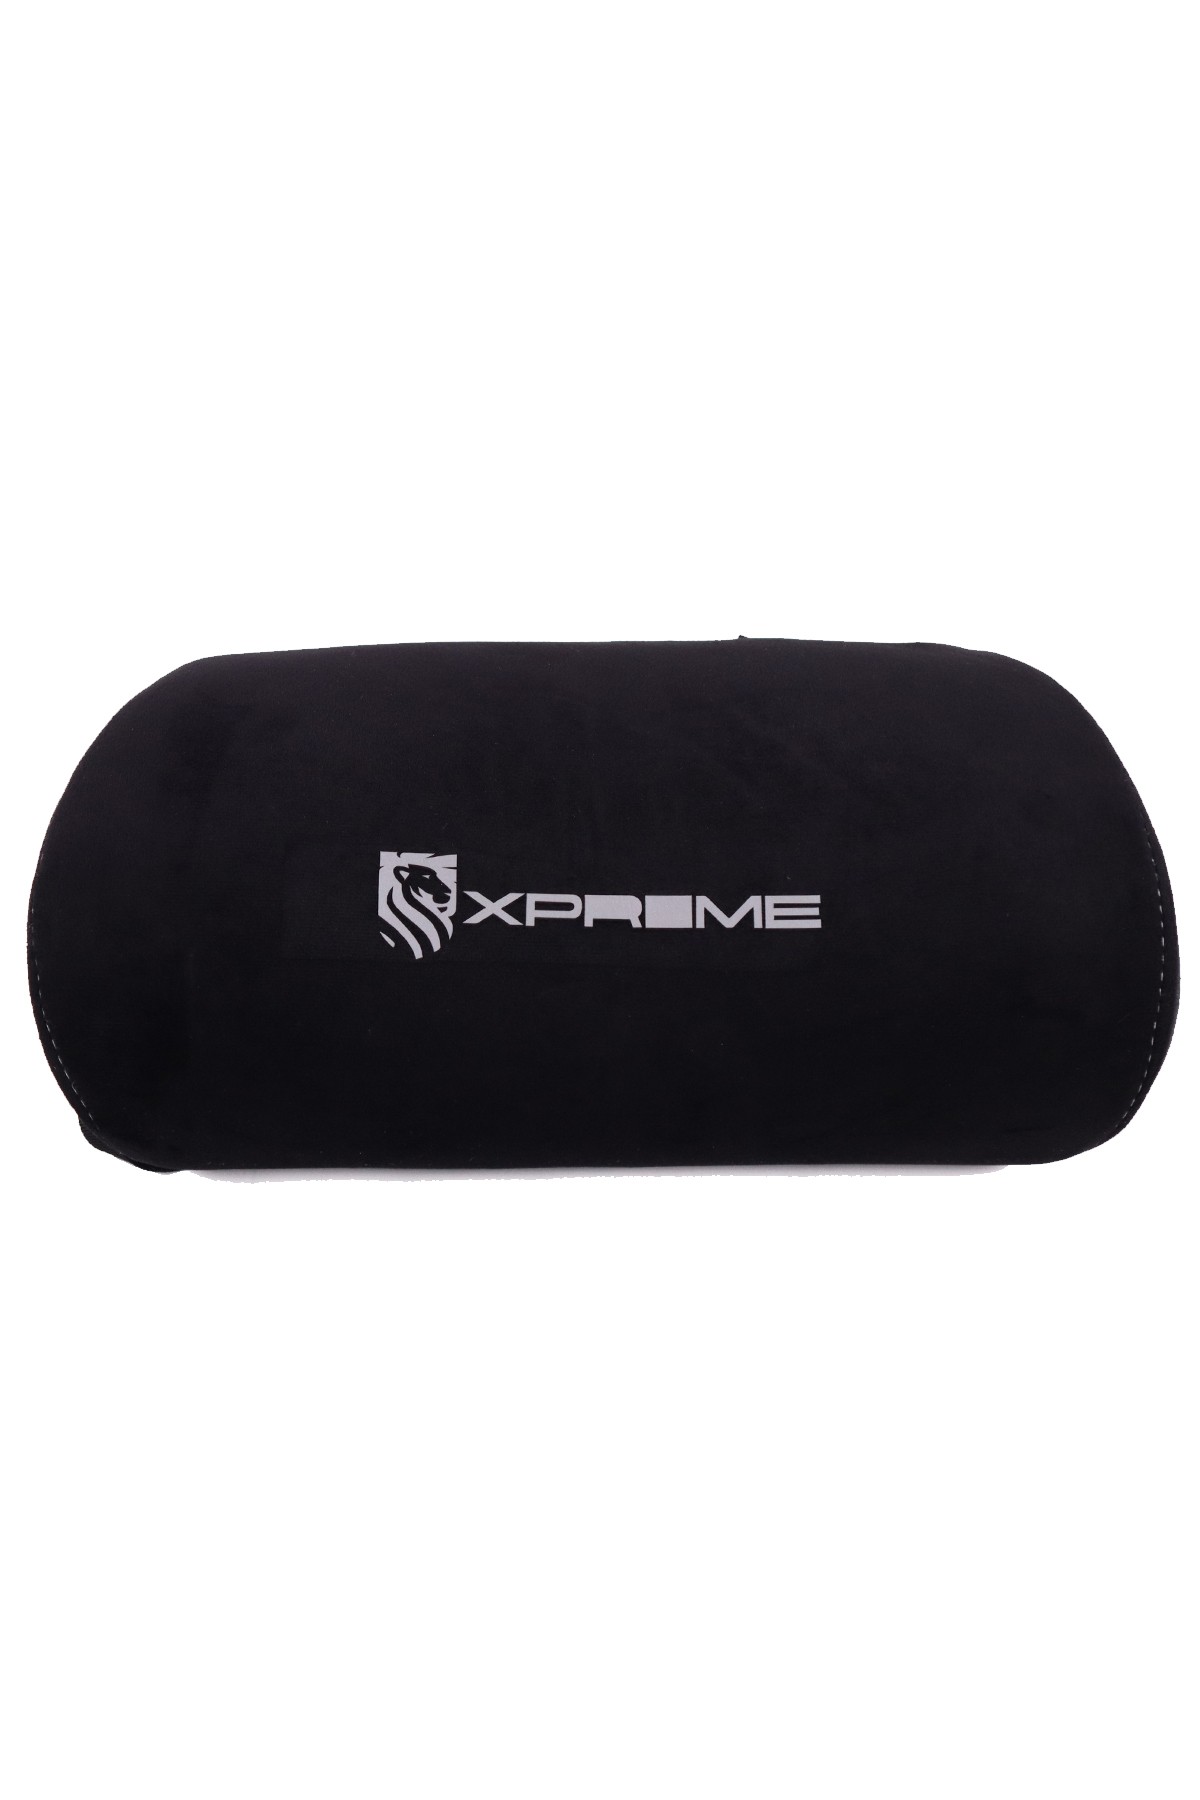 Xprime Premium Bel Yastığı Kumaş Siyah